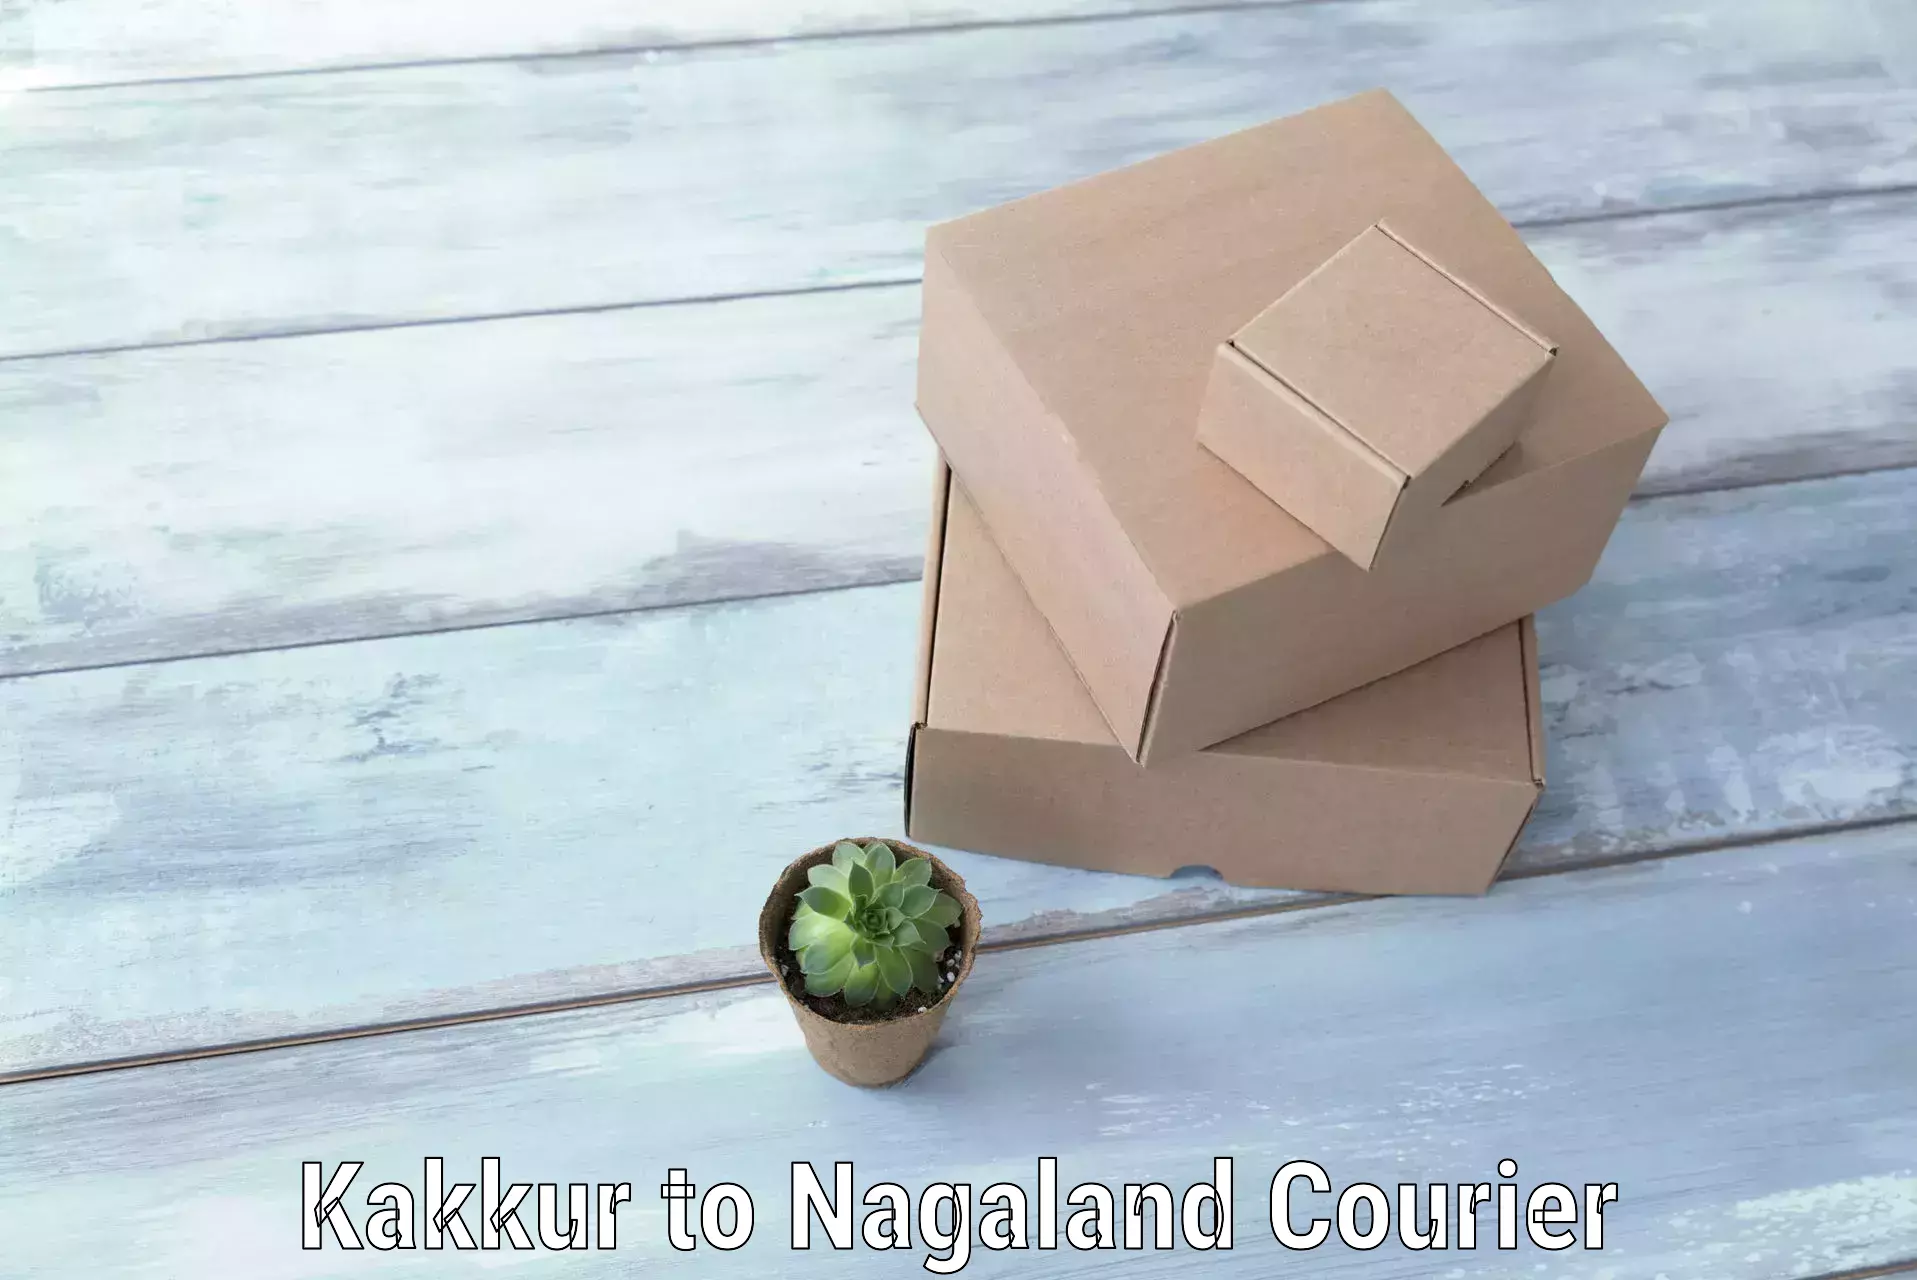 Baggage shipping experts Kakkur to Nagaland